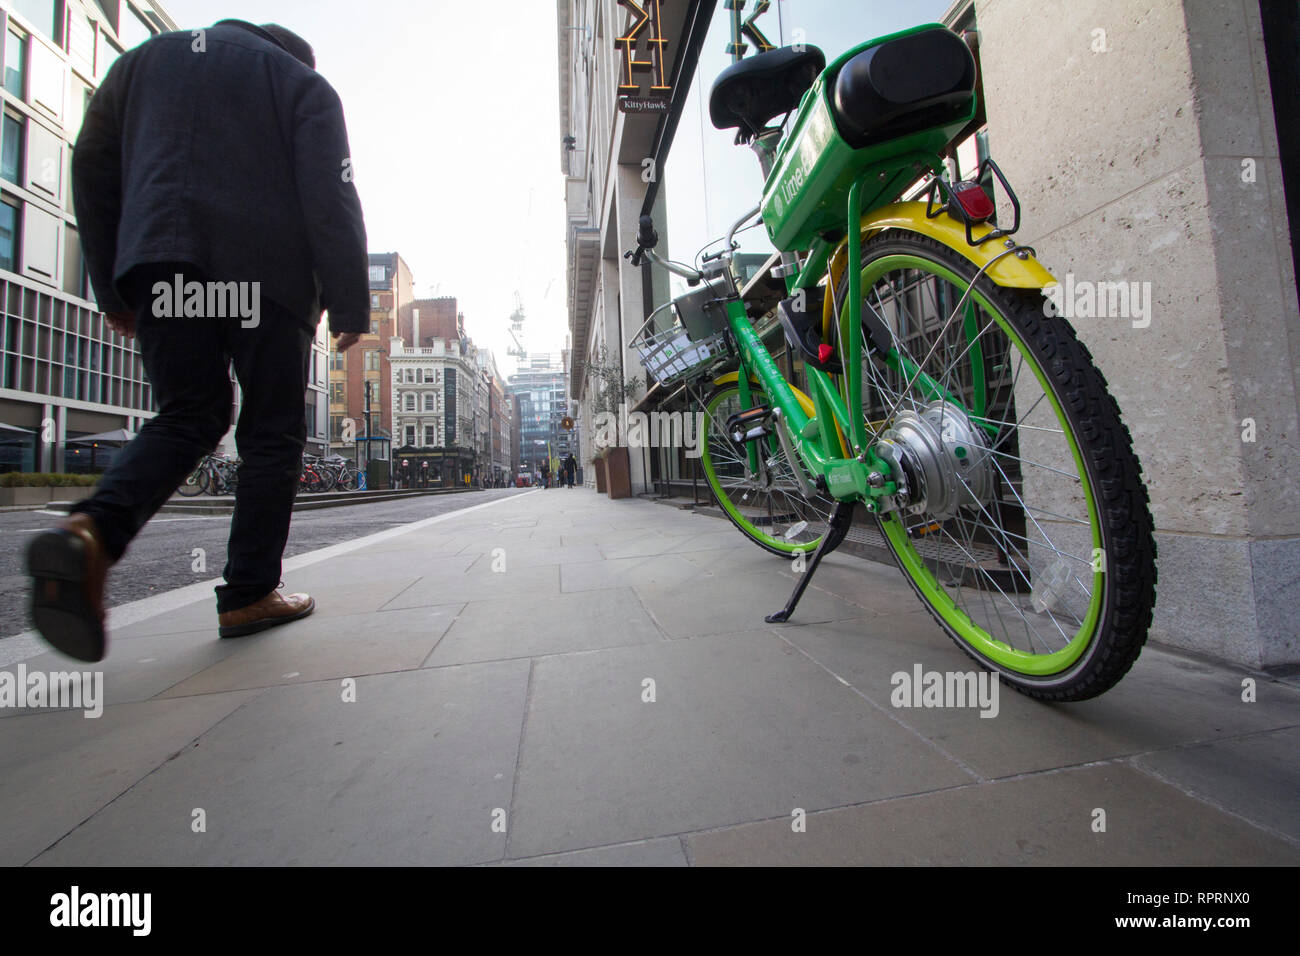 Kalk ebike elektrische Fahrrad Fahrrad London, auf Asphalt in der Stadt London geparkt Stockfoto